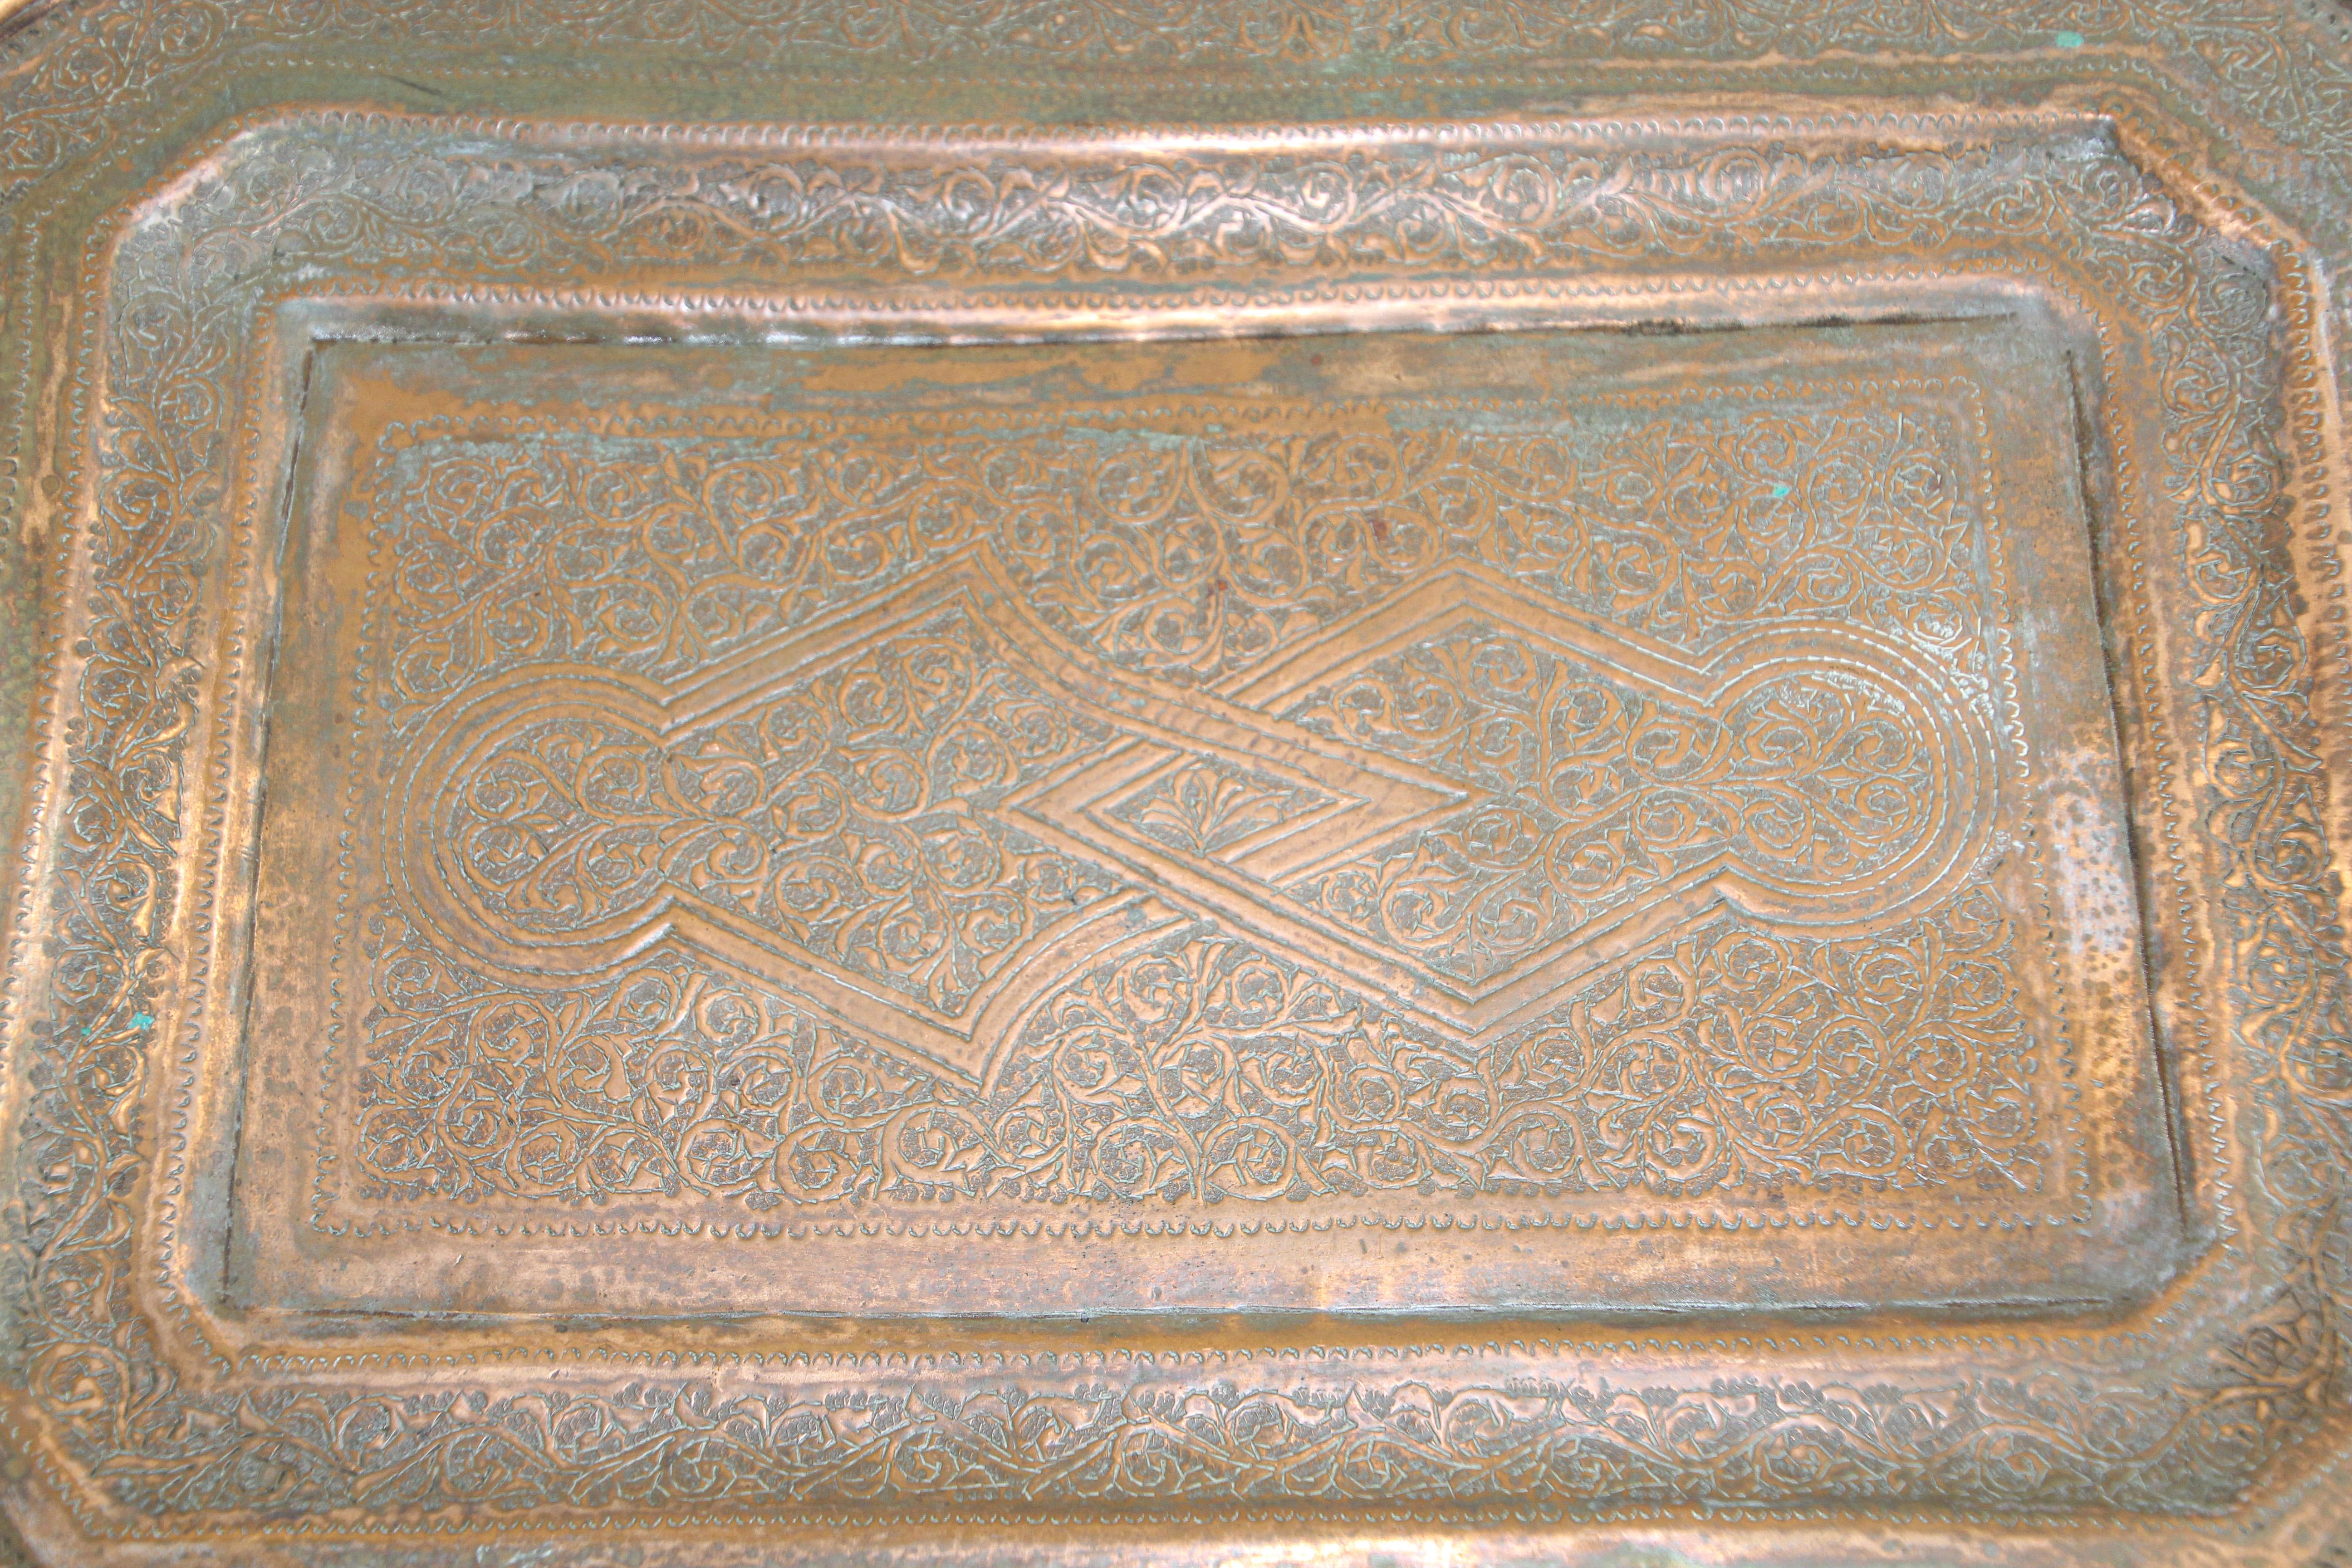 Achteckiges persisches Servierbrett aus Kupfer aus dem Nahen Osten.
Handgehämmertes Kupfertablett mit sehr feinen maurischen Motiven.
Abmessungen:
13 